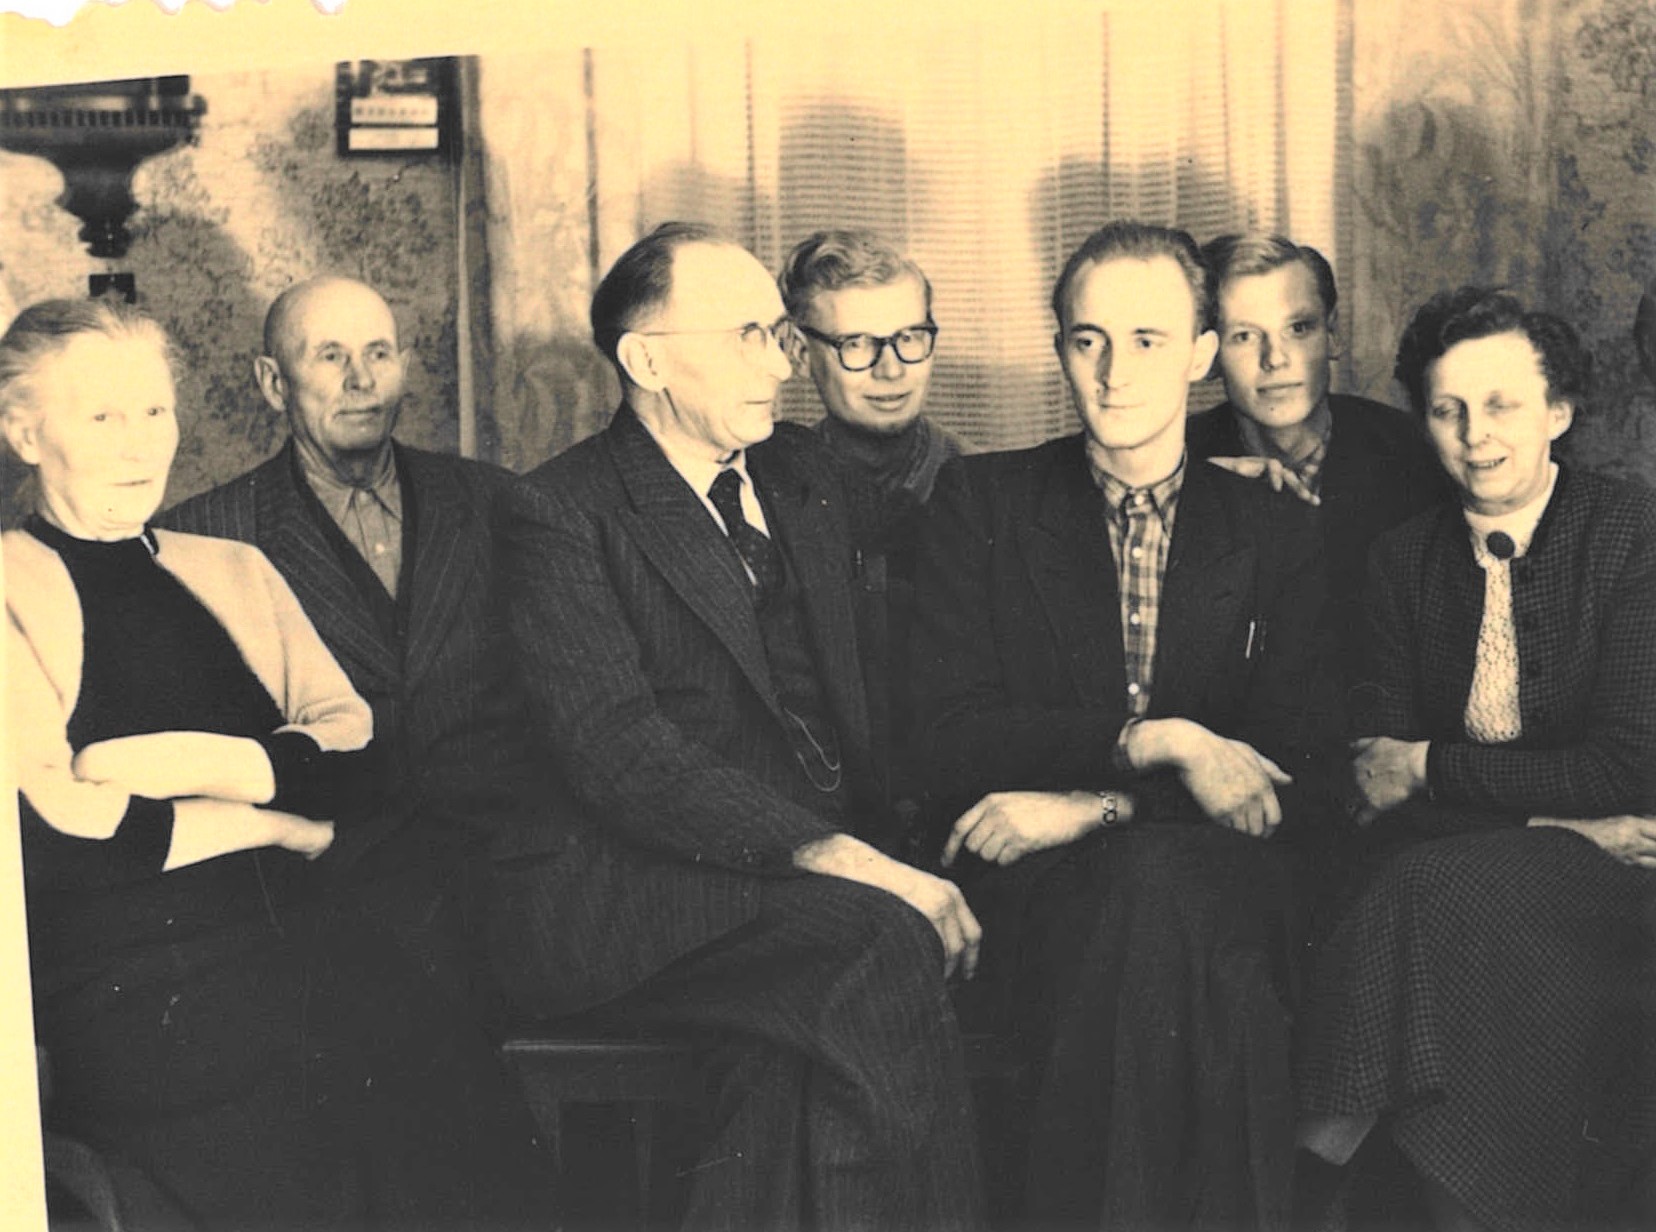 Erstes gemeinsames Weihnachtsfest in einer Familie in der Bundesrepublik, die Dietmar aufgenommen hatte, Dezember 1955. Im Vordergrund Dietmar mit kariertem Hemd, rechts und links seine Eltern.